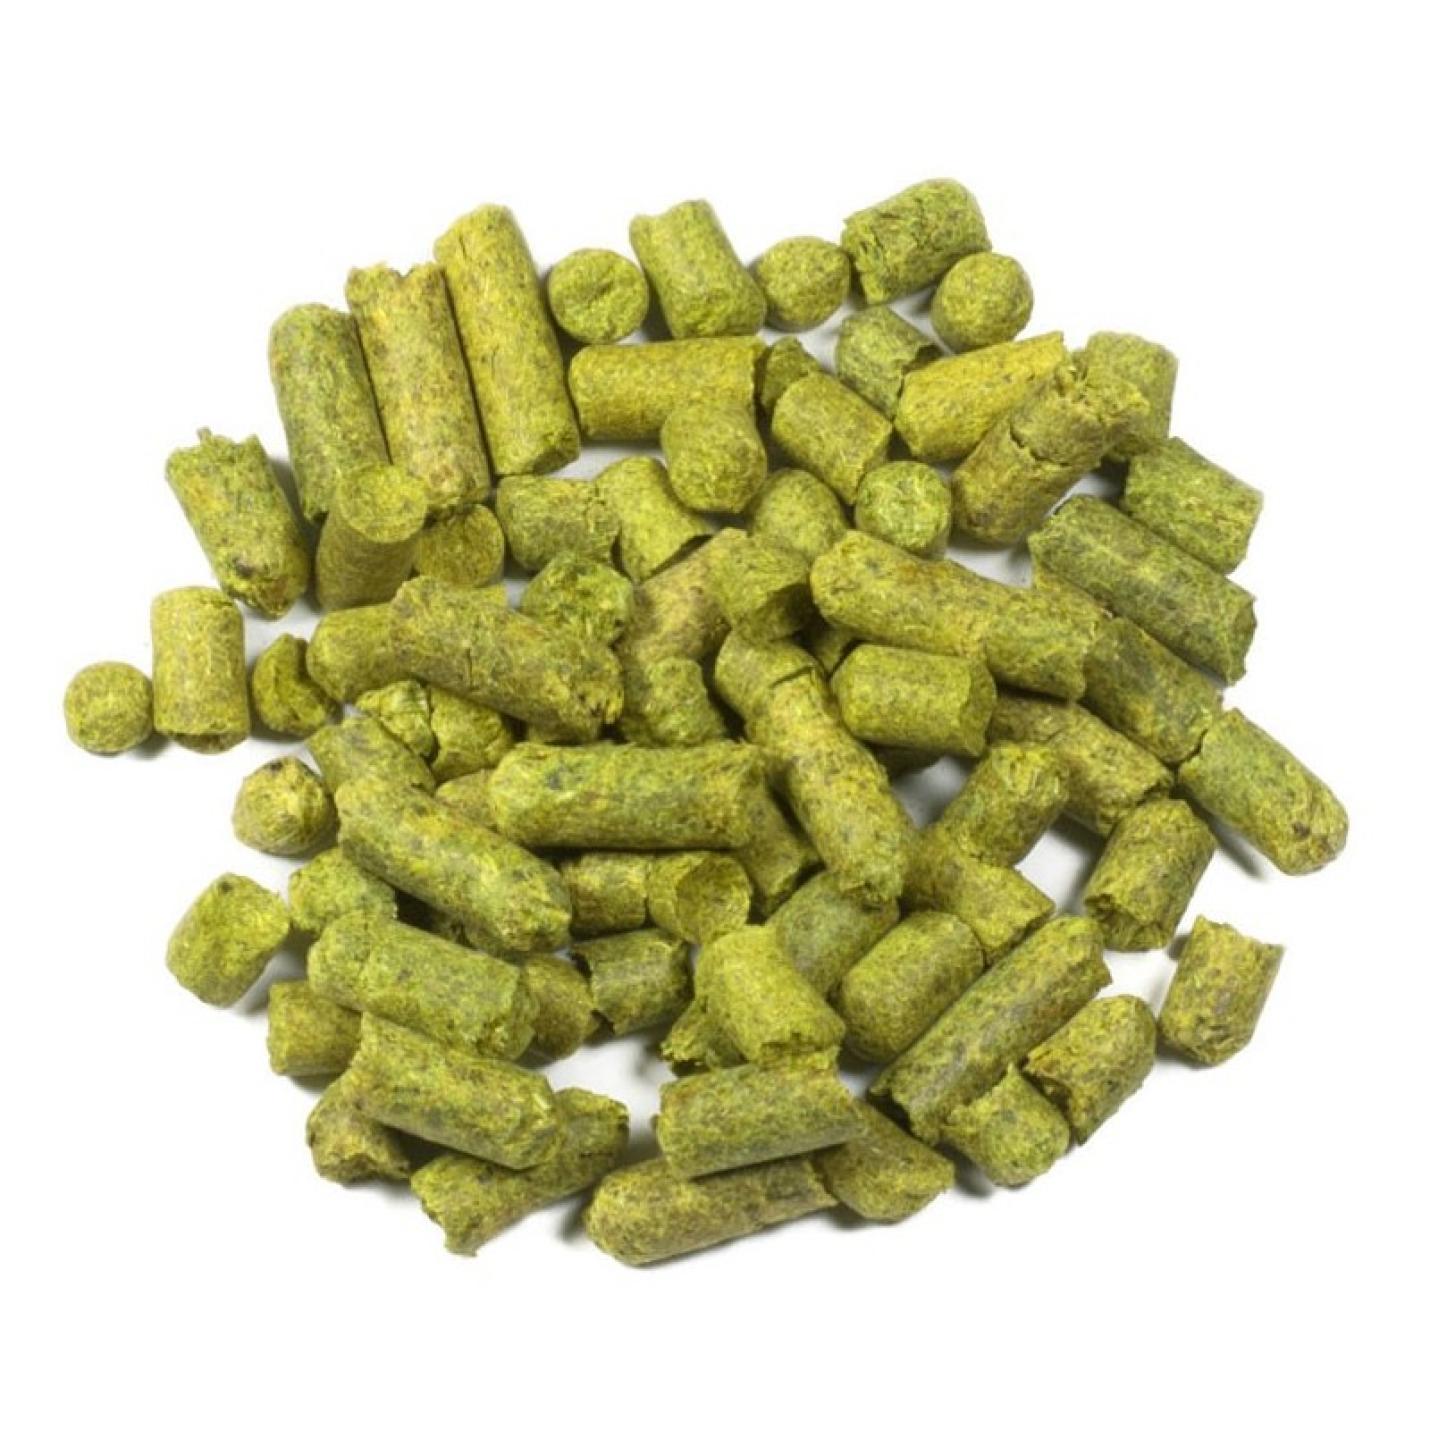 Aramis pellets 5,0% Alpha 2018 100g.